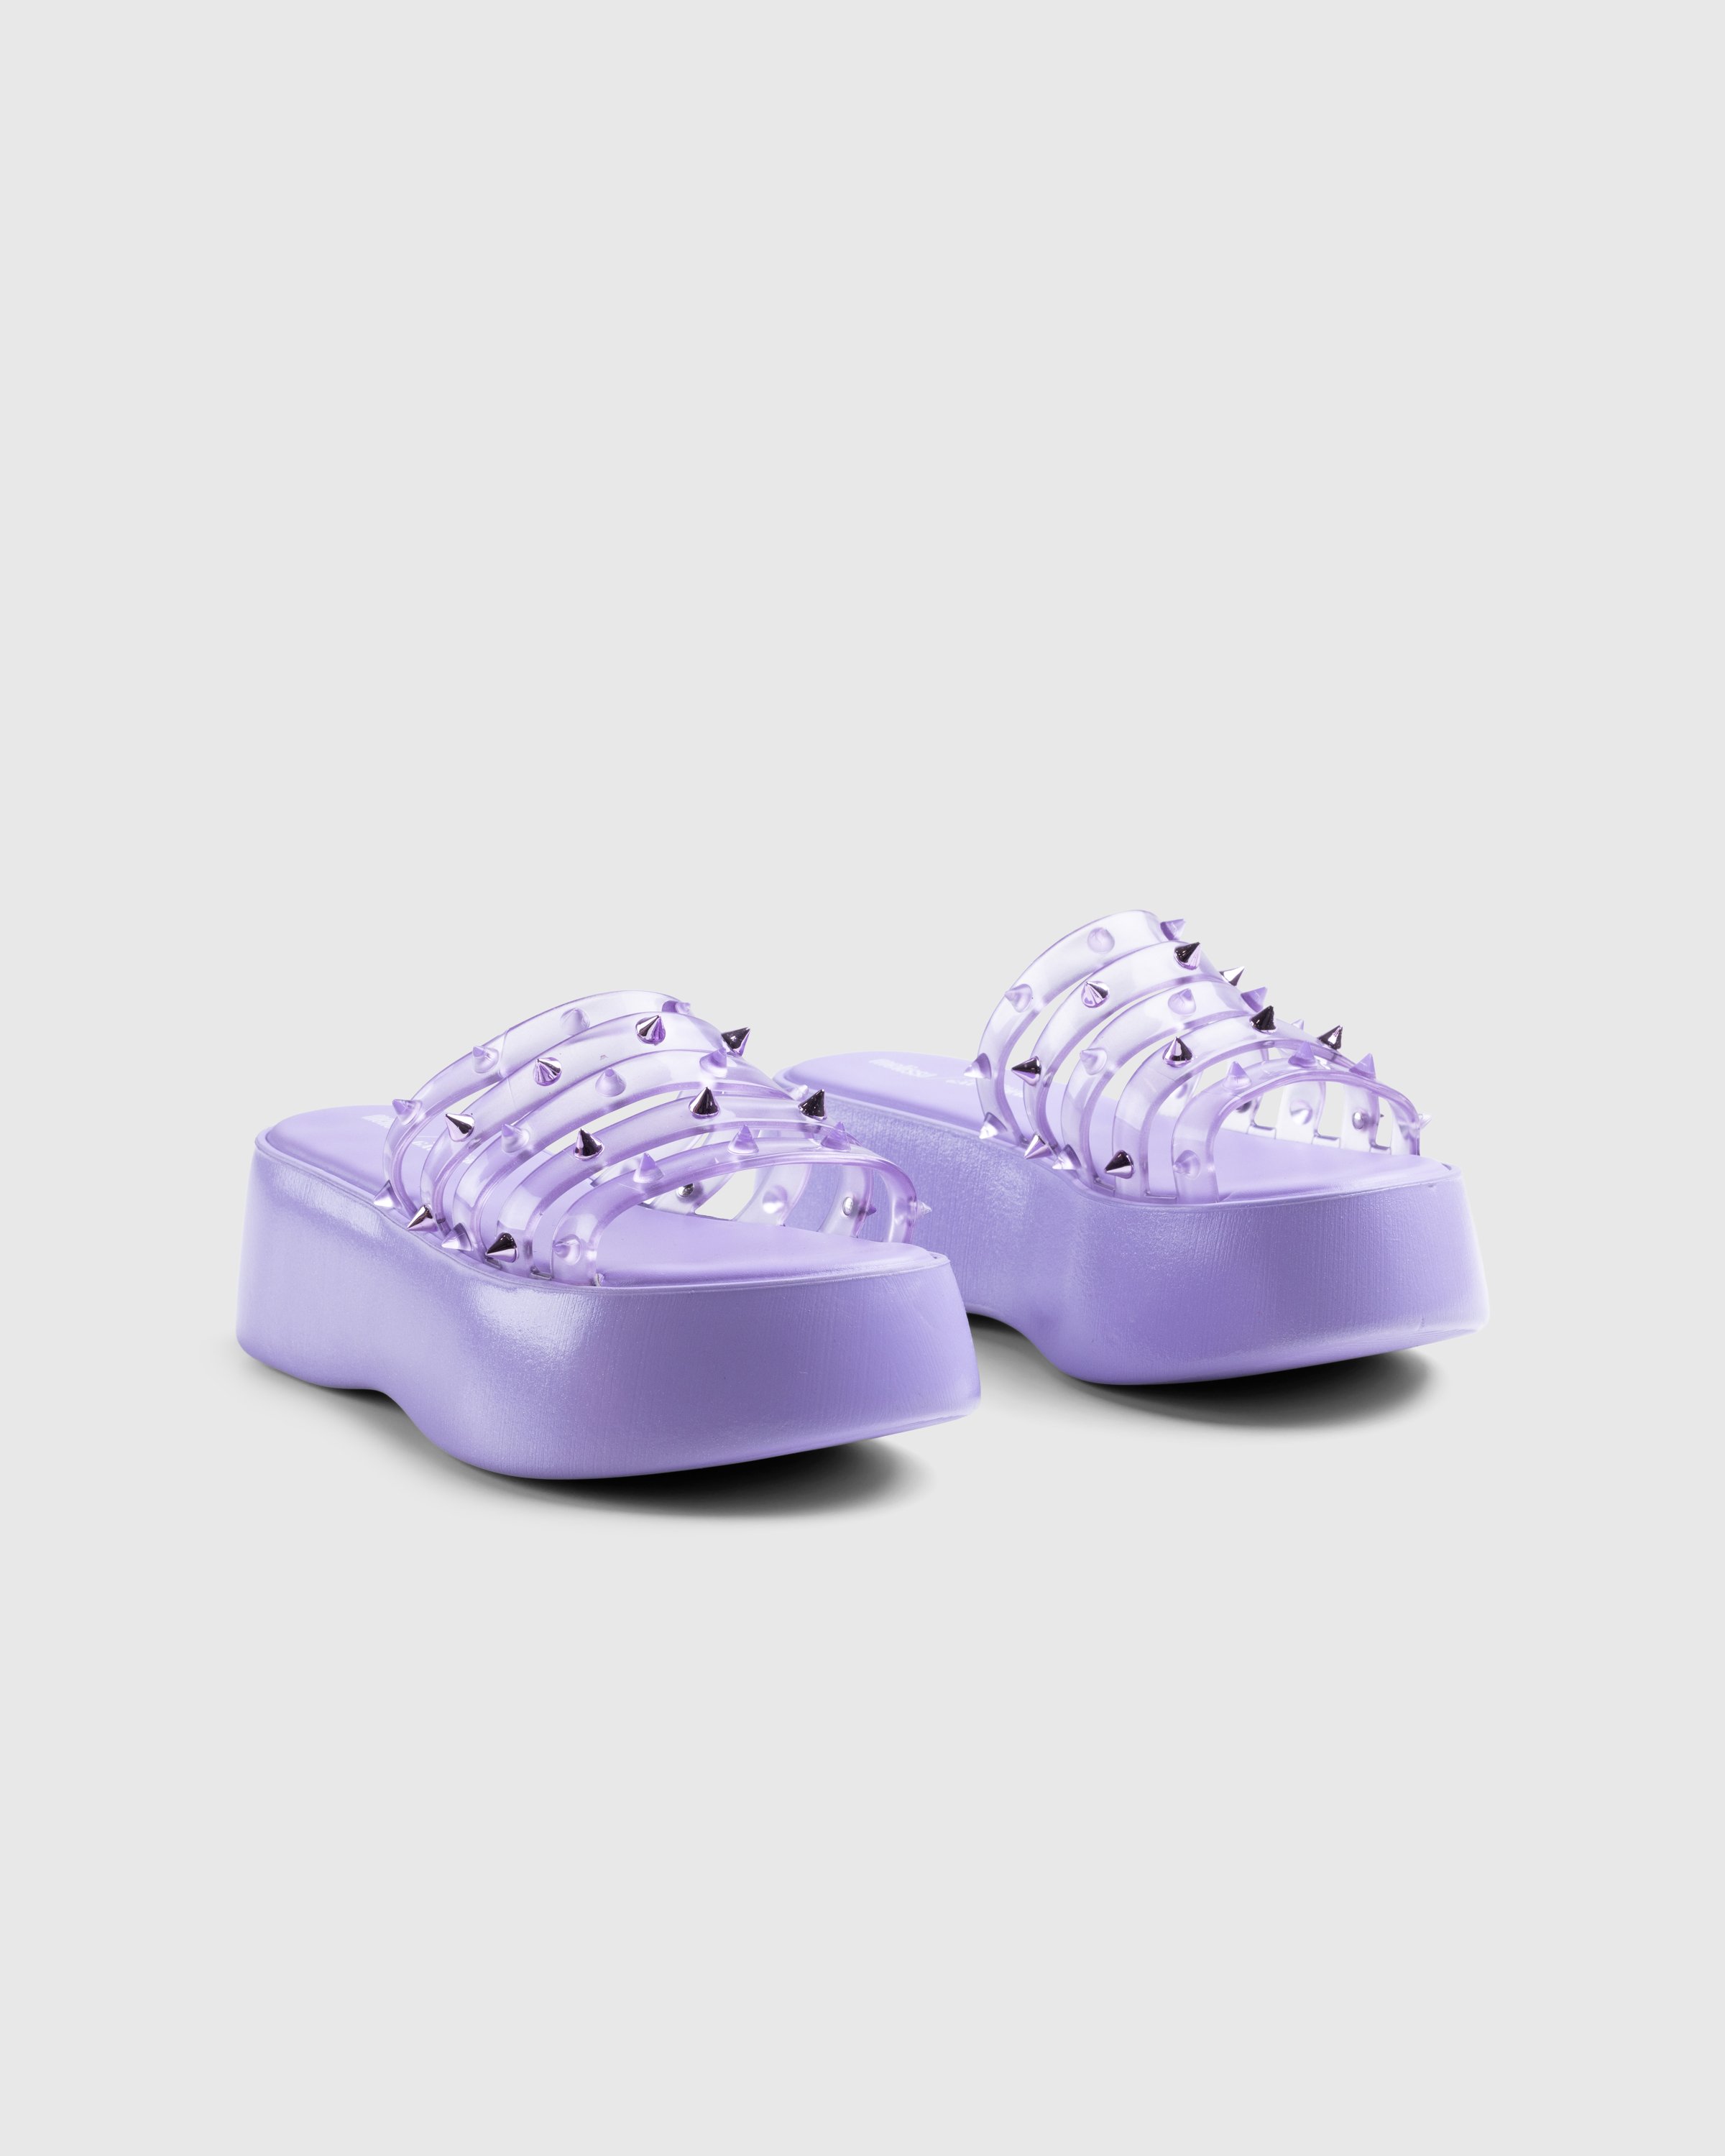 Jean Paul Gaultier x Melissa - Becky Punk Love Mule Purple - Footwear - Purple - Image 3